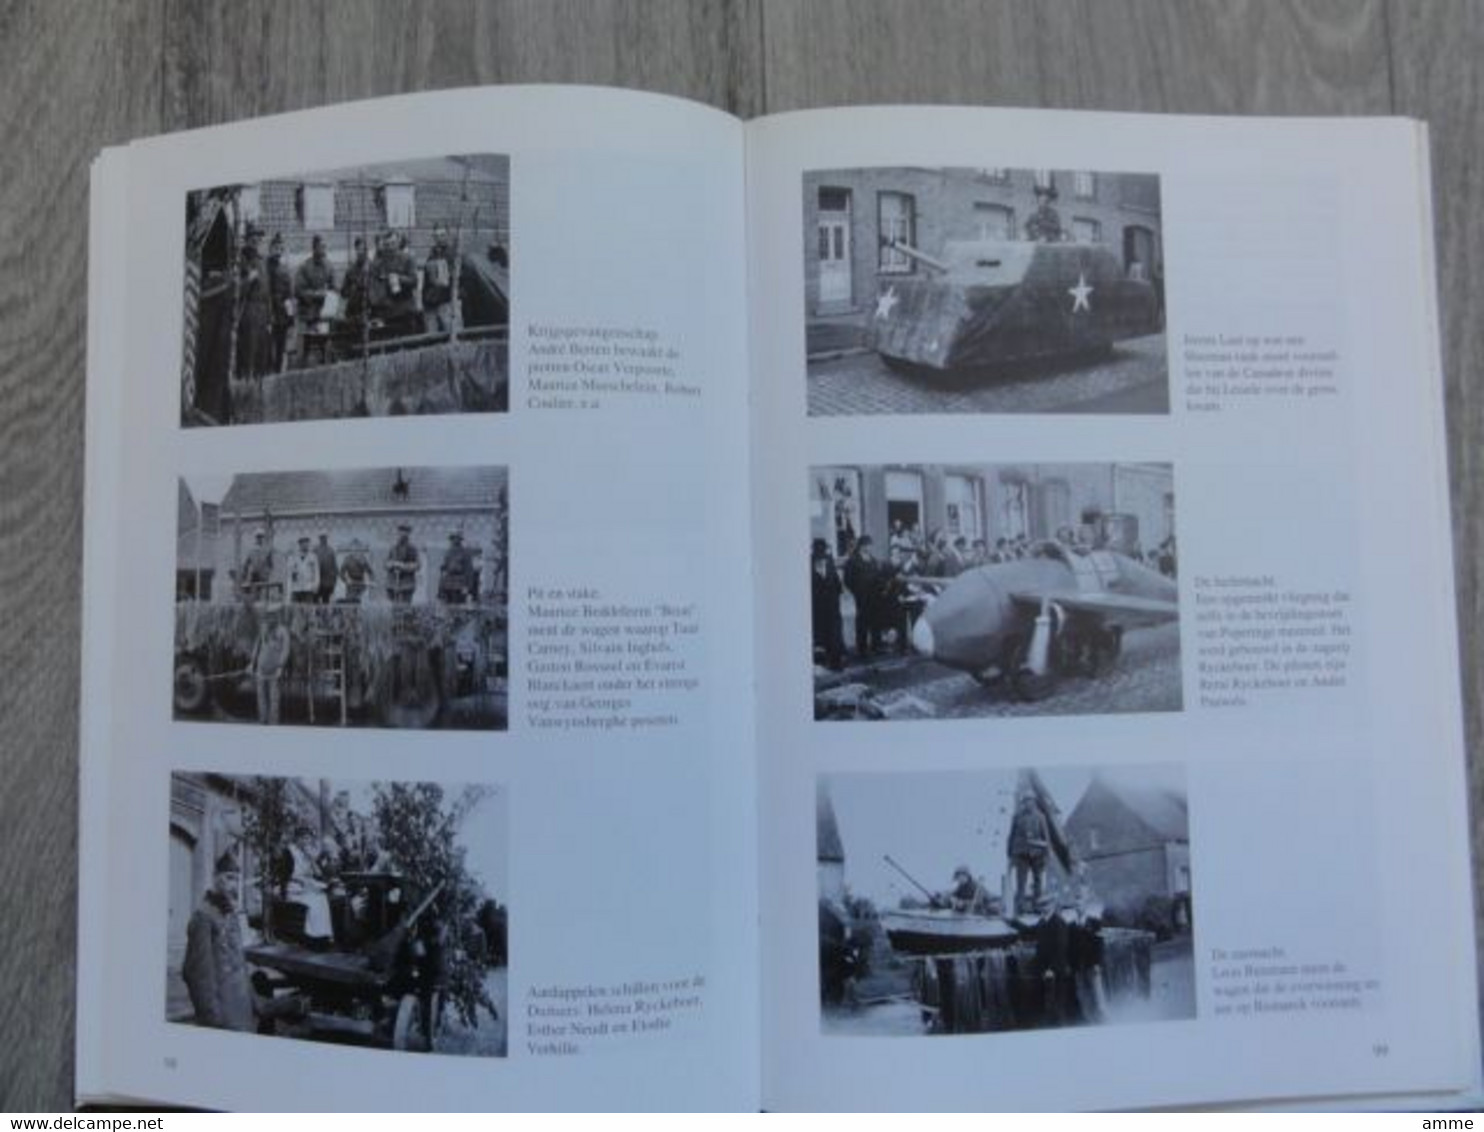 De Westhoek in september '44 * (Boek)  De bevrijding in beeld   (Heemkunde - oorlog )